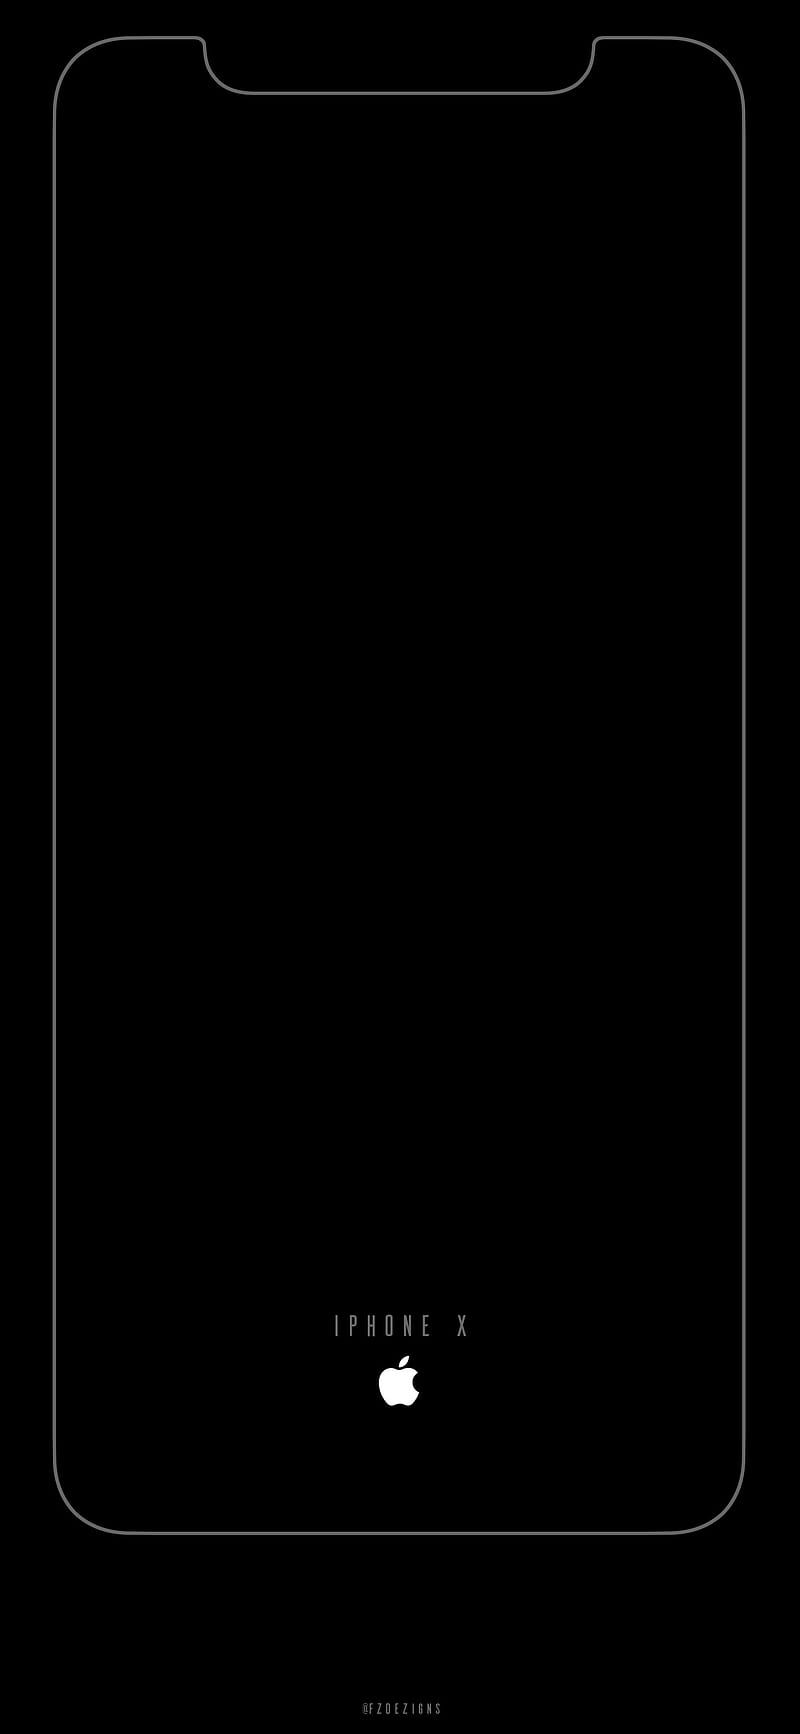 Bộ sưu tập hình nền iPhone X Black Amoled Wallpaper với màu sắc đen trắng huyền bí, đầy ấn tượng và lịch lãm. Nó giúp tăng cường độ tương phản của màn hình, giúp bạn thưởng thức hình ảnh sắc nét và chất lượng cao hơn, đẳng cấp hơn. Hãy trải nghiệm những bức hình nền Black Amoled đang chờ đón bạn trên iPhone X ngay.